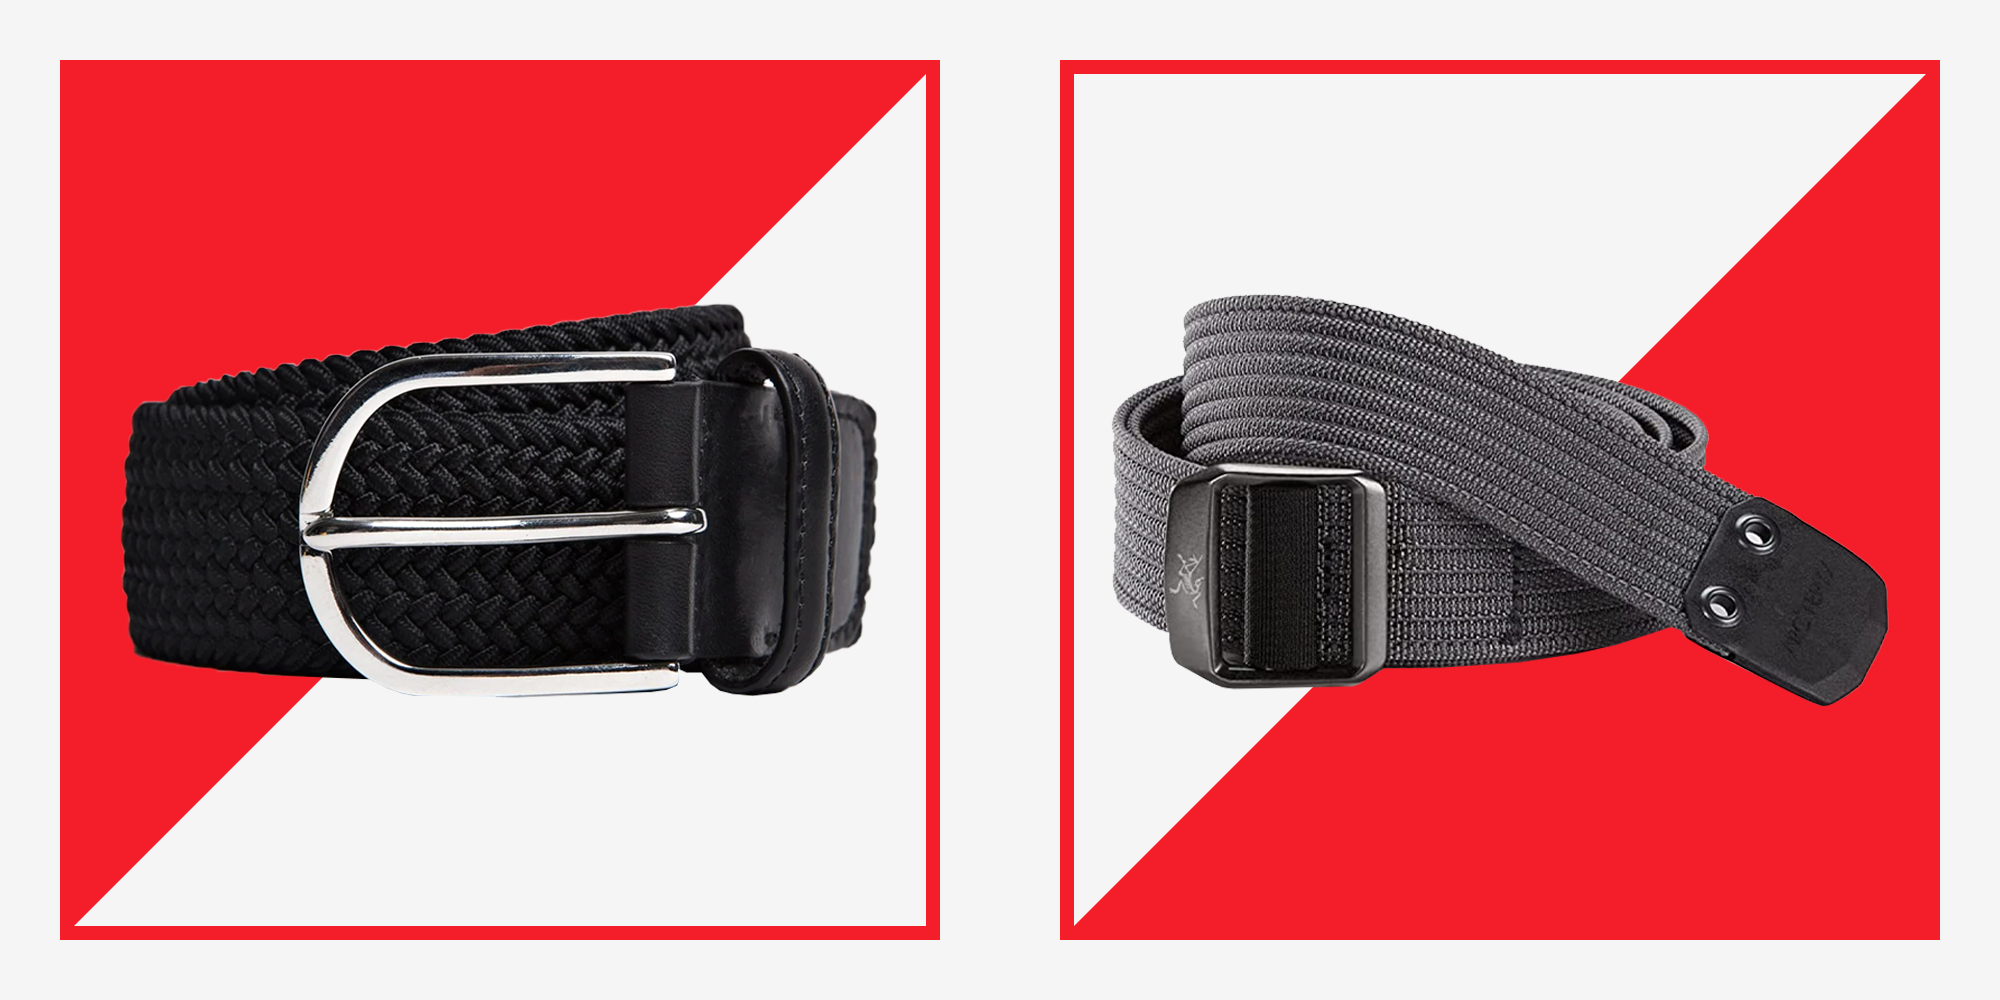 Best Men's Belts 2020: The Best Men's Designer Belts To Buy Now